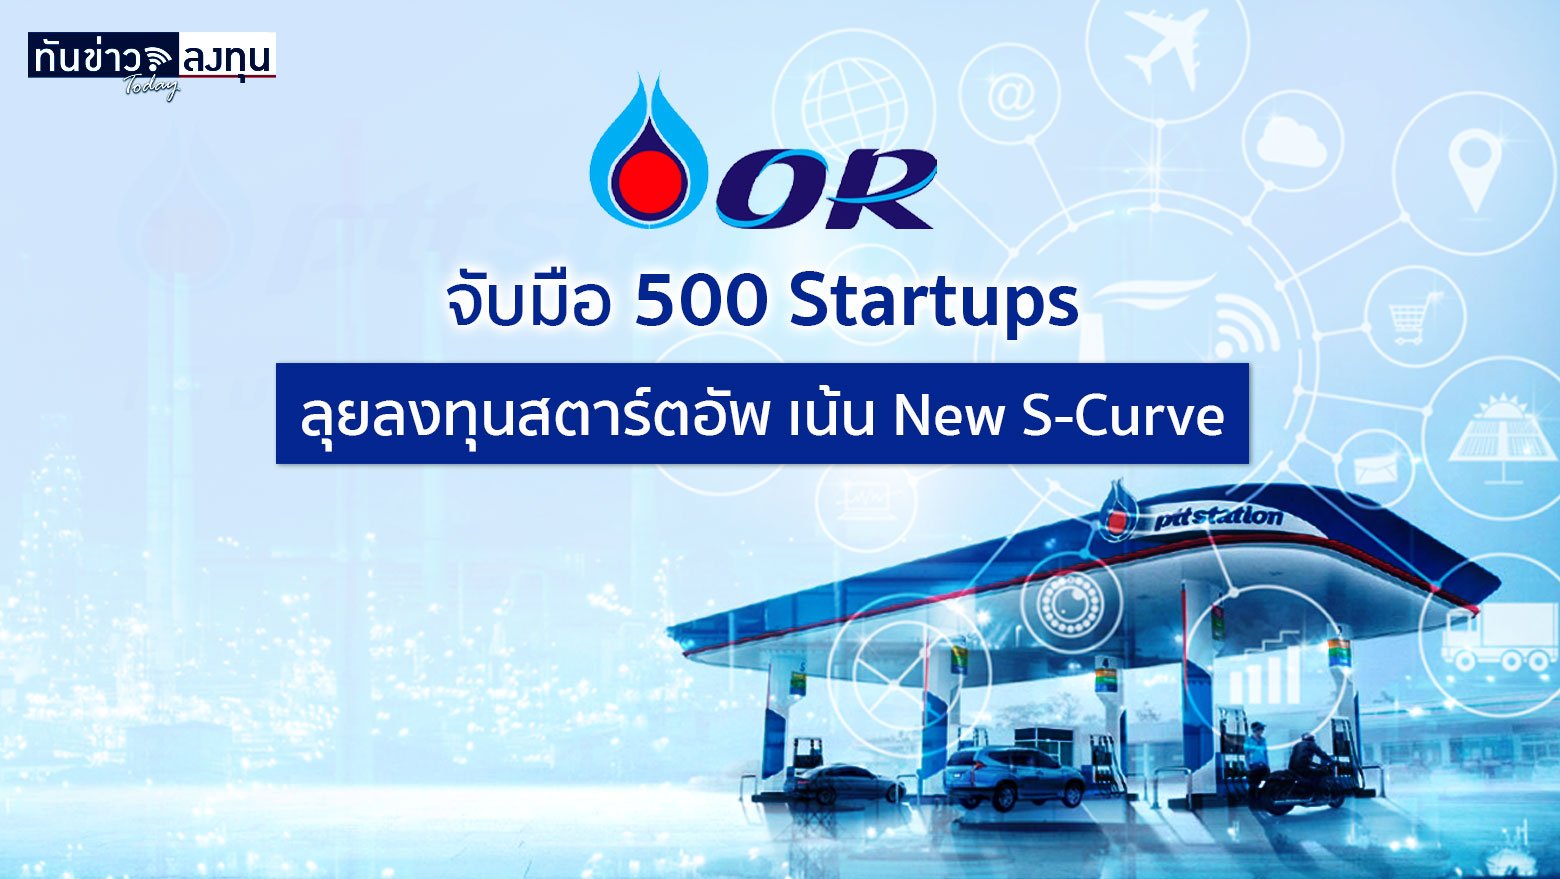 OR จับมือ 500 Startups จัดตั้งกองทุน ORZON VENTURES ในสหรัฐ ลงทุนสตาร์ทอัพไทย-อาเซียน เน้นธุรกิจ New S-Curve